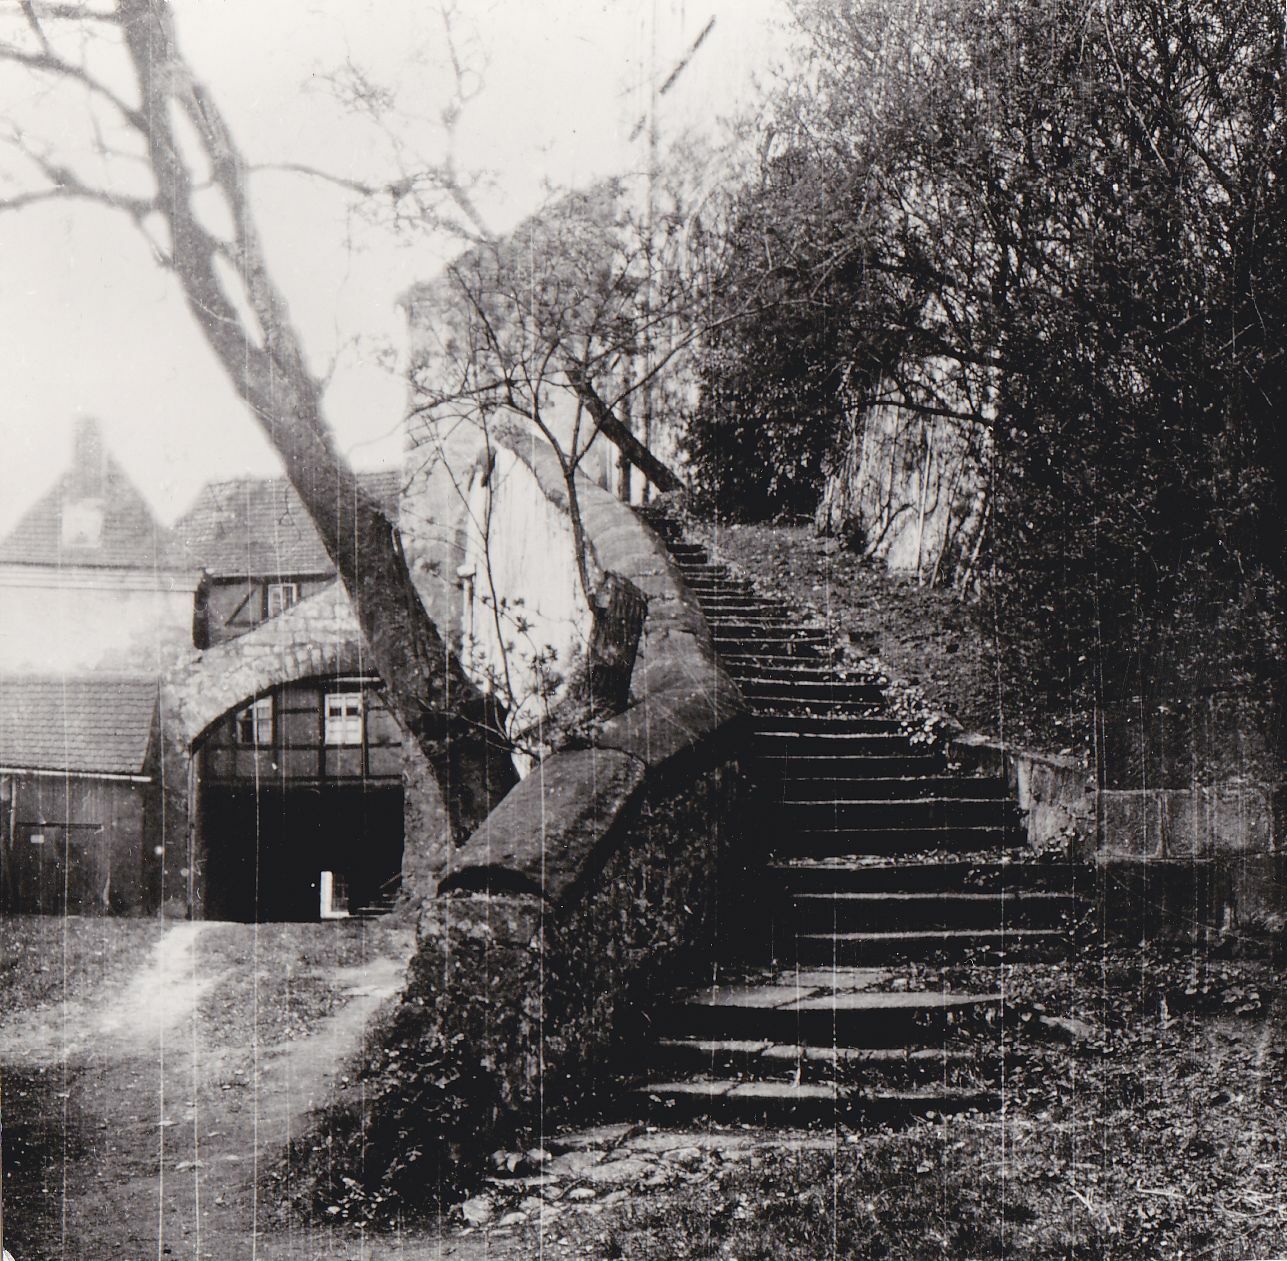 Reitertreppe 1925 mit Bäumen und Sträuchern bewachsen. Schwarz-weiß-Aufnahme